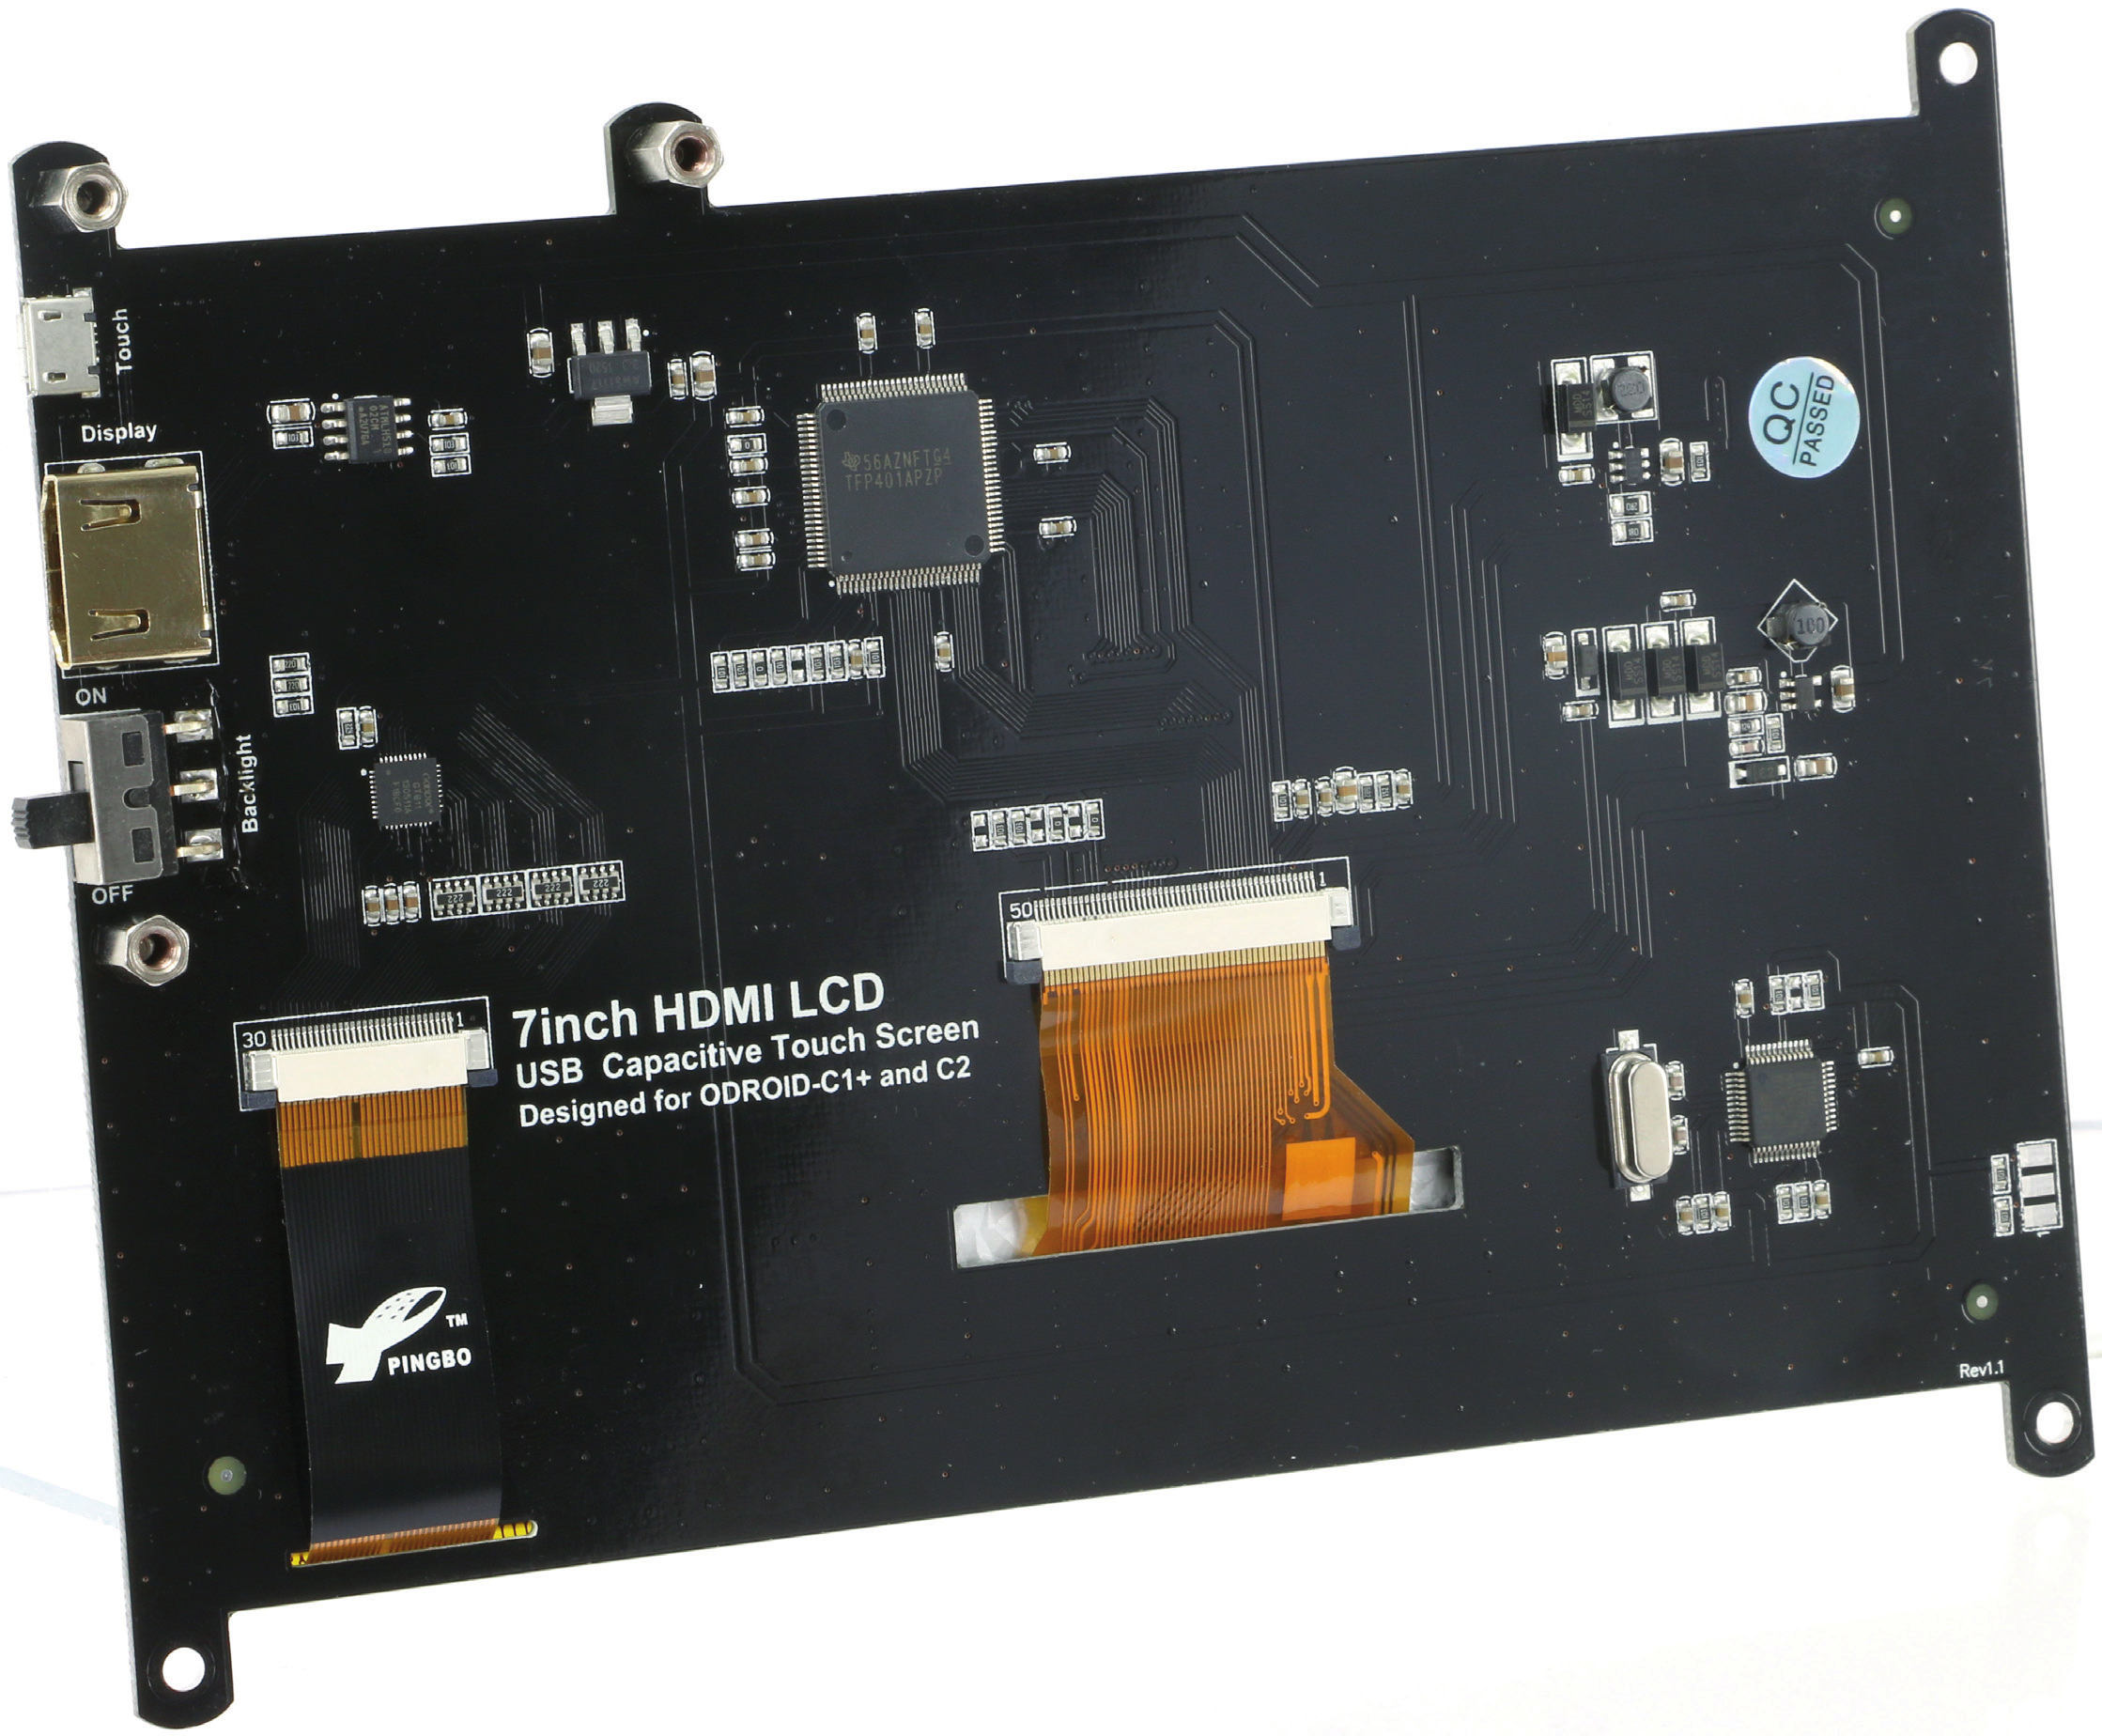 Bestimmungsgemäße Verwendung TFT-LCD-Display mit HDMI-Eingang und kapazitivem USB-Touchscreen. Der ODROID-C1+ kann direkt auf das Display montiert und über Adapter angesteckt werden.